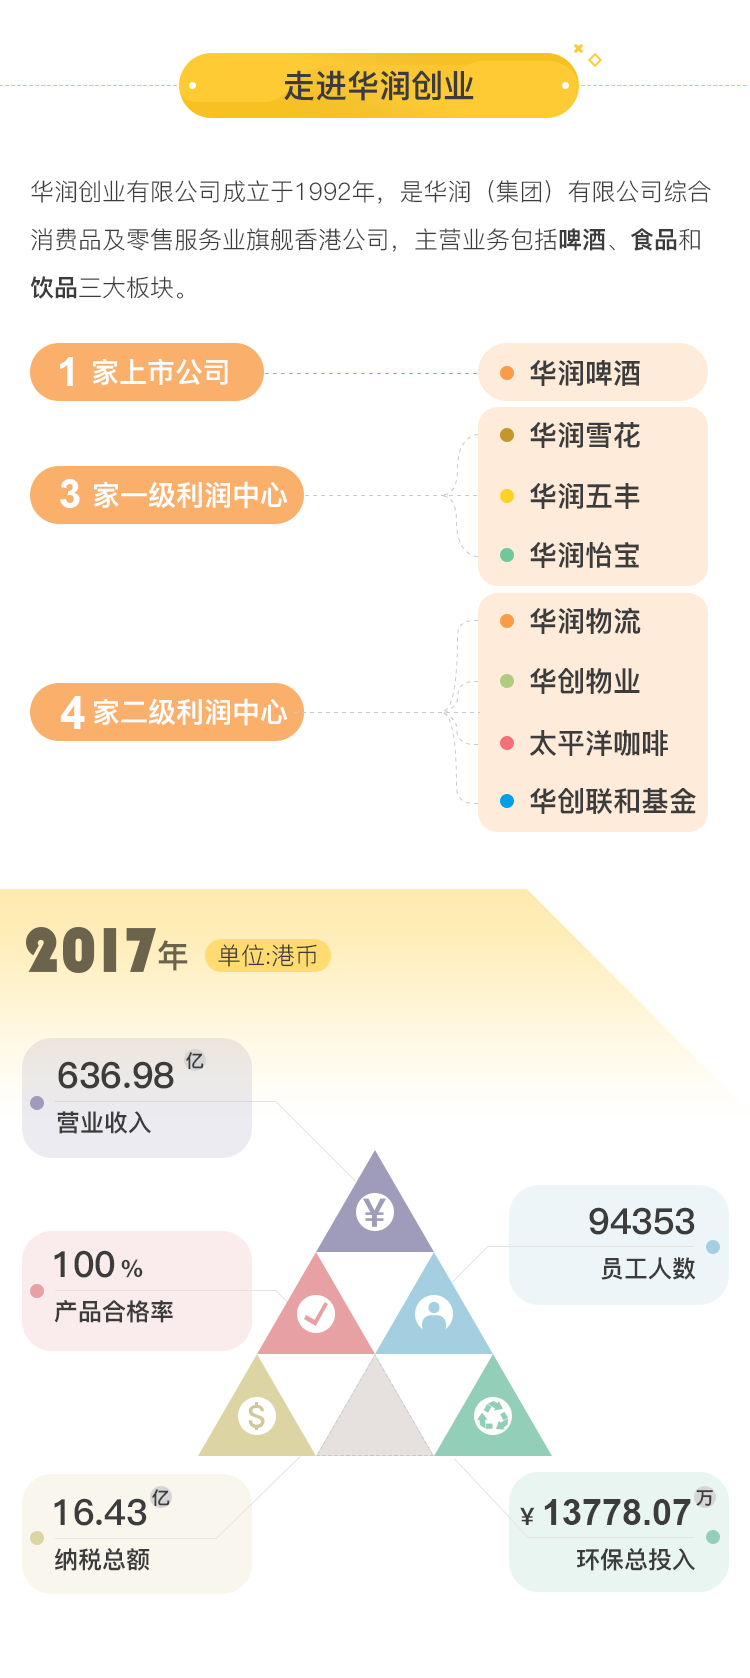 一图看懂华润创业2017社会责任报告201807(6)_02.png